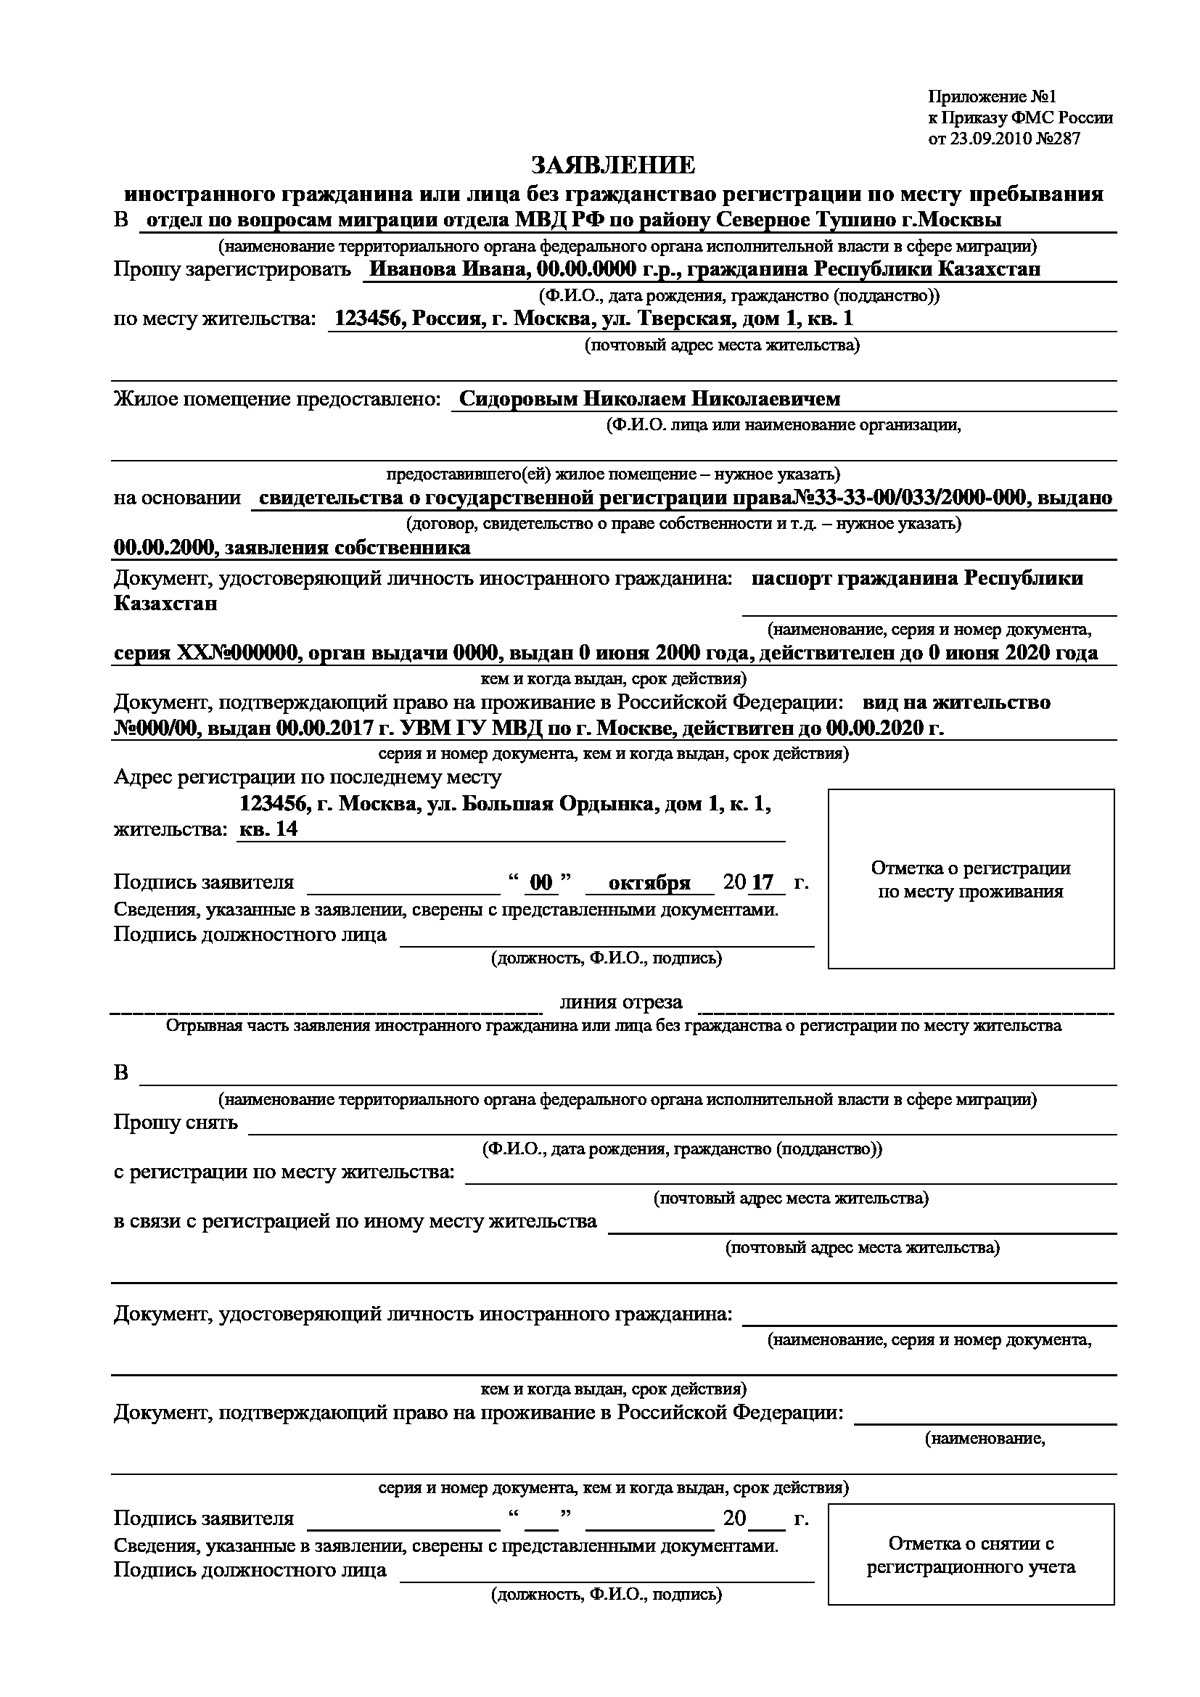 Регистрация по рвп: сроки, бланки, документы – мигранту рус